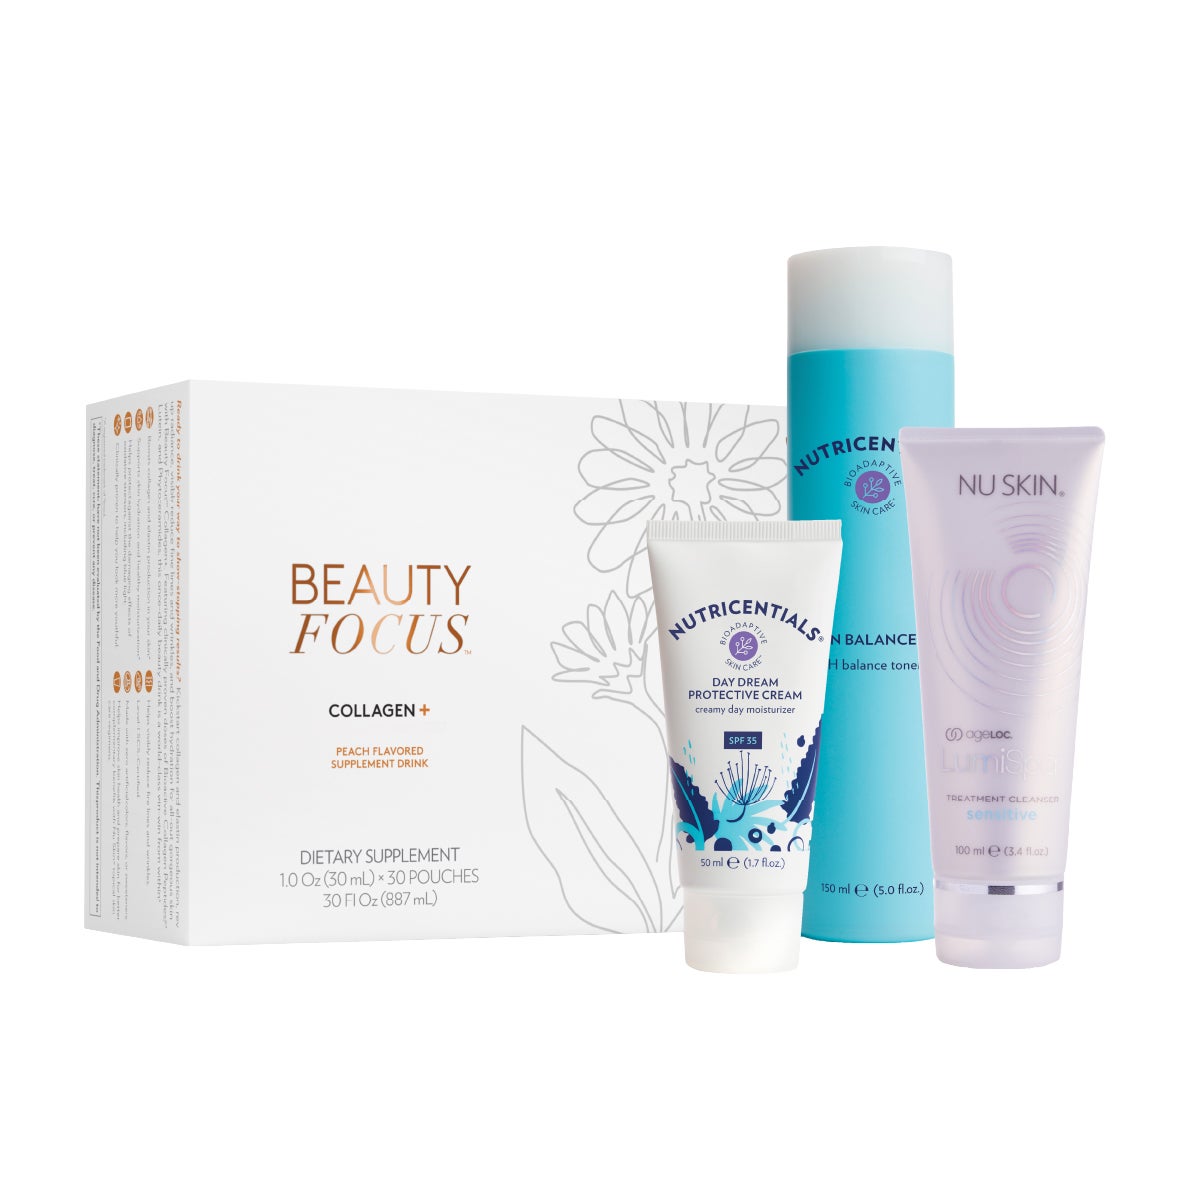 Beauty Focus™ Collagen+ Sensitive Regimen Subscription